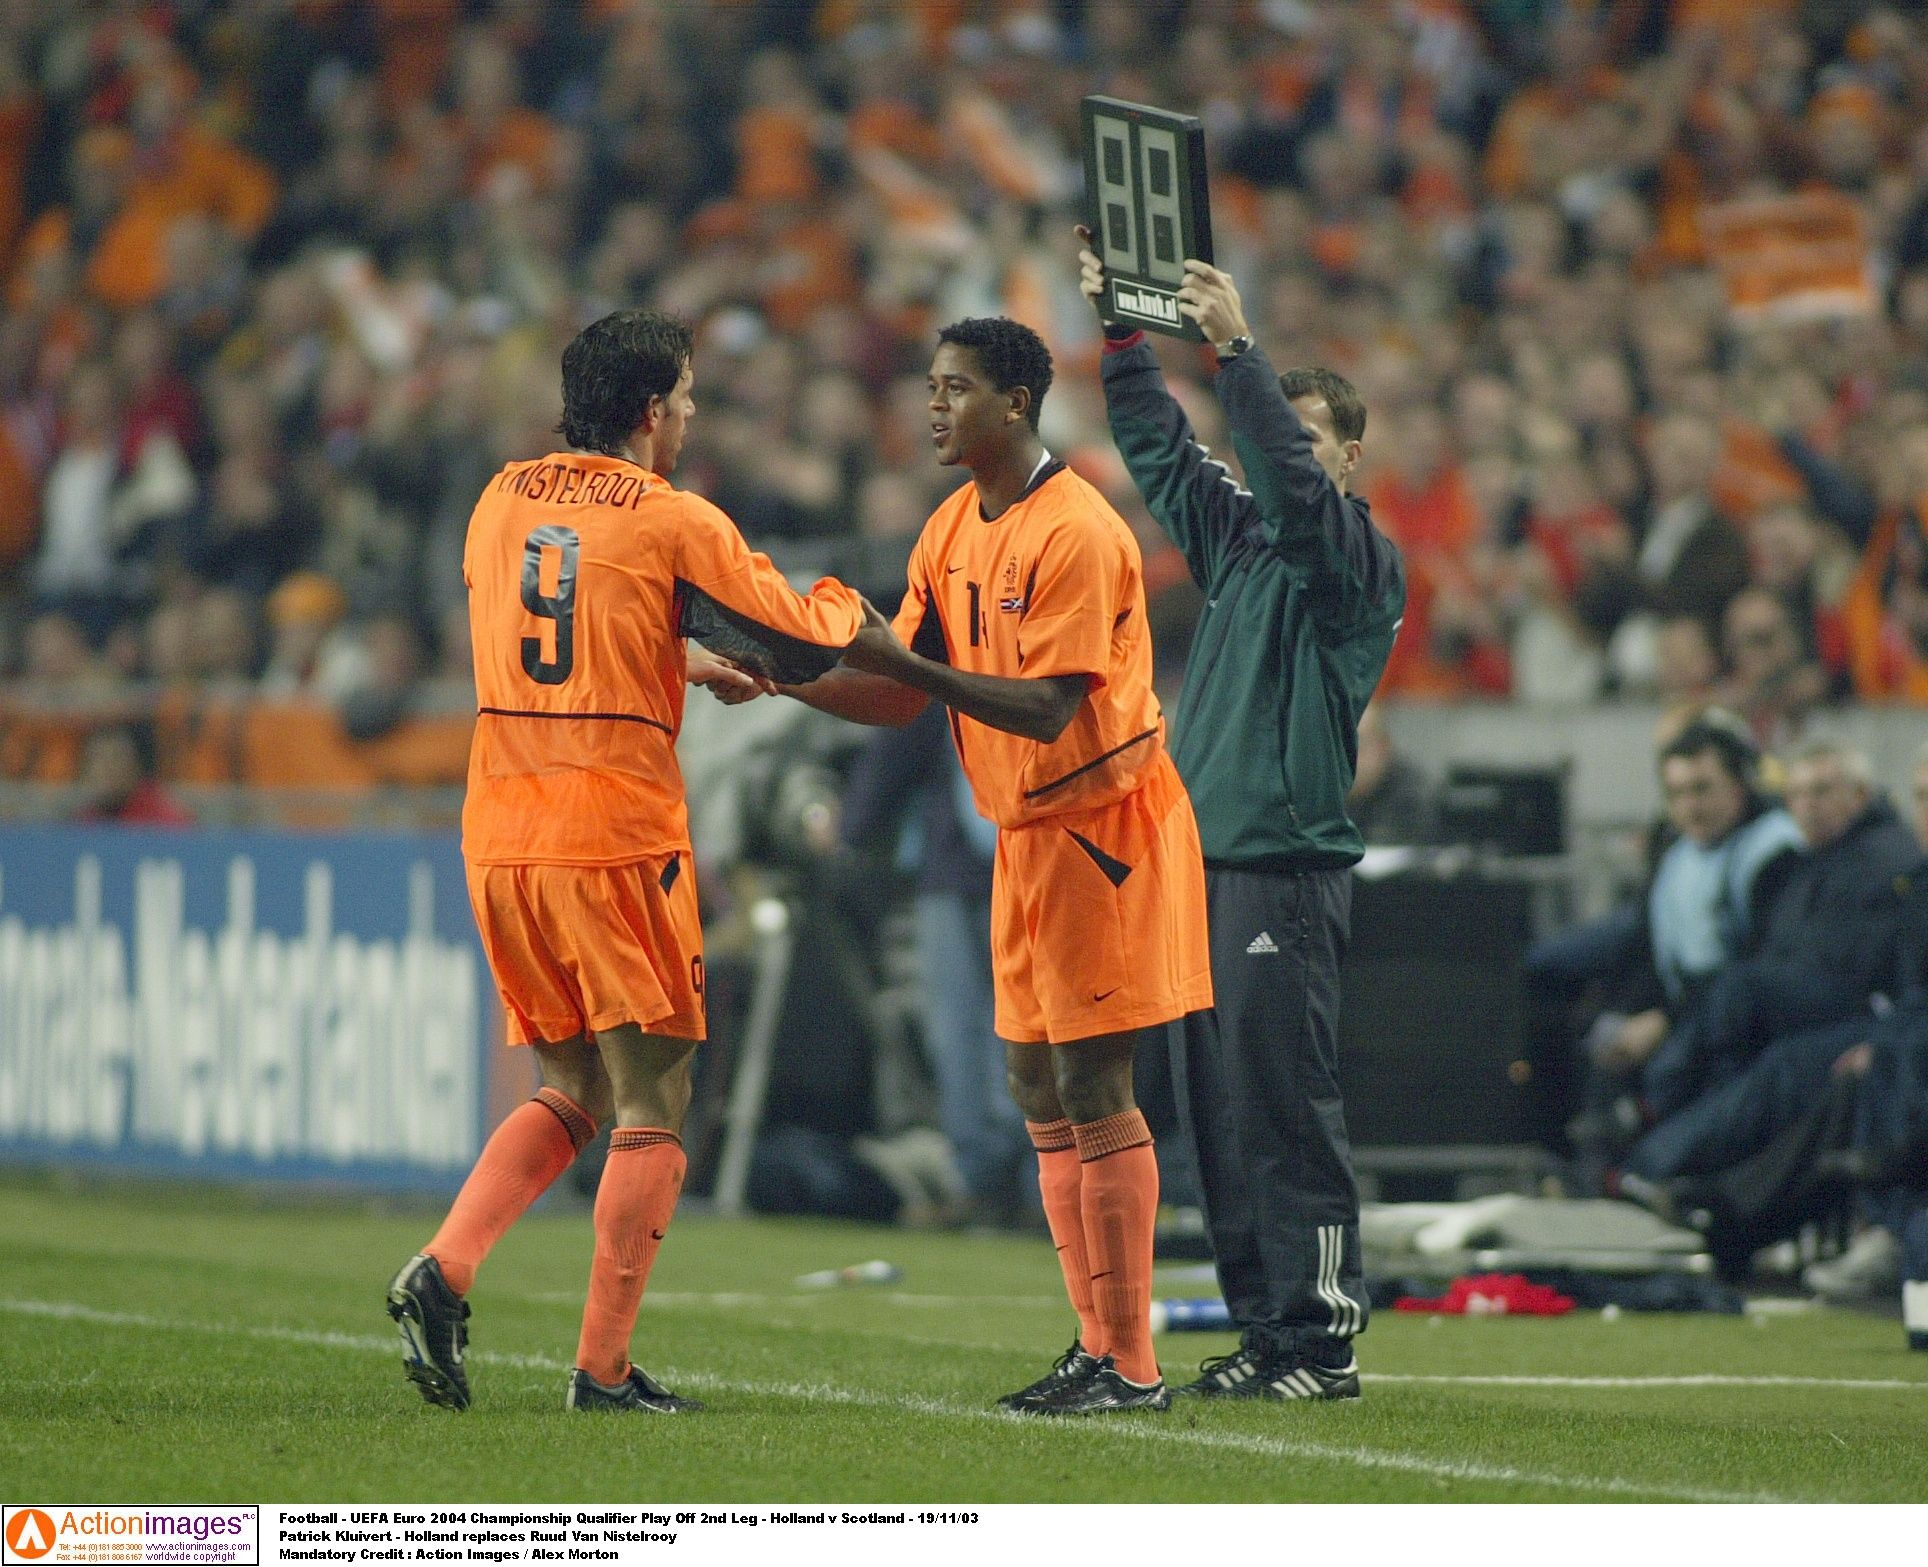 Ruud van Nistelrooy and Patrick Kluivert